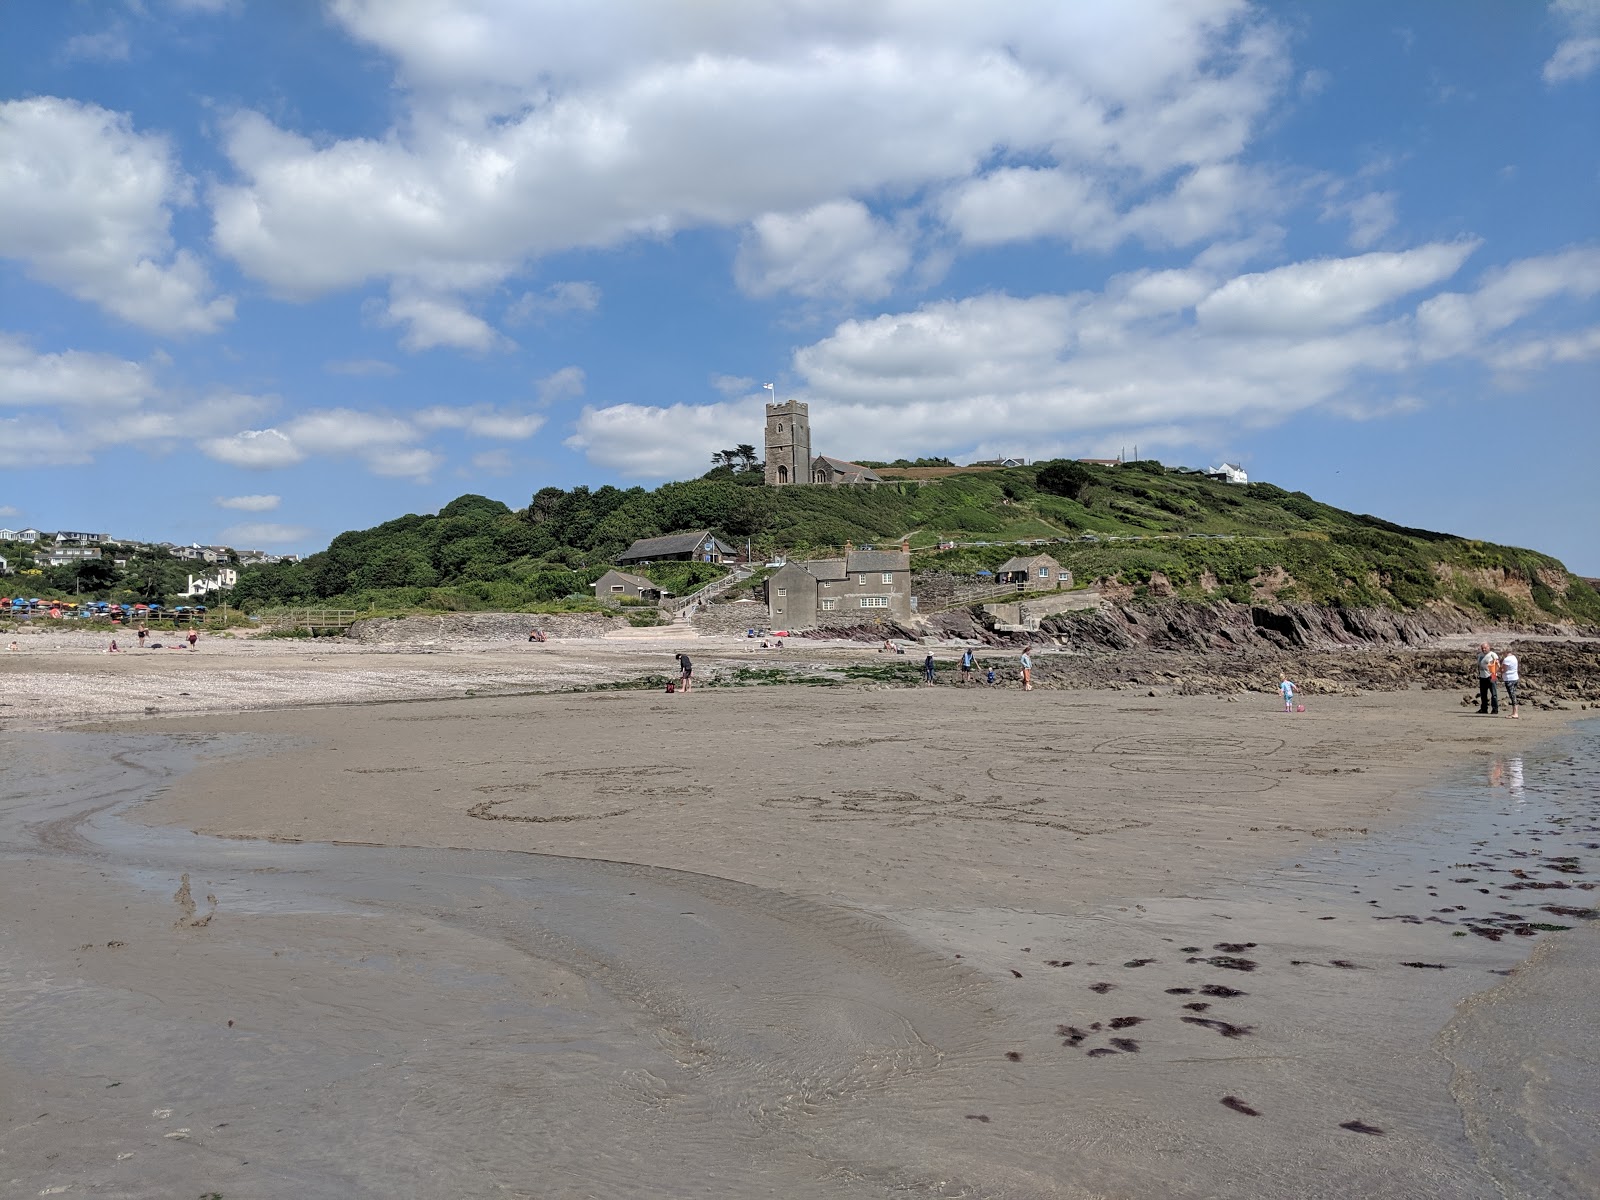 Foto af Wembury beach - populært sted blandt afslapningskendere